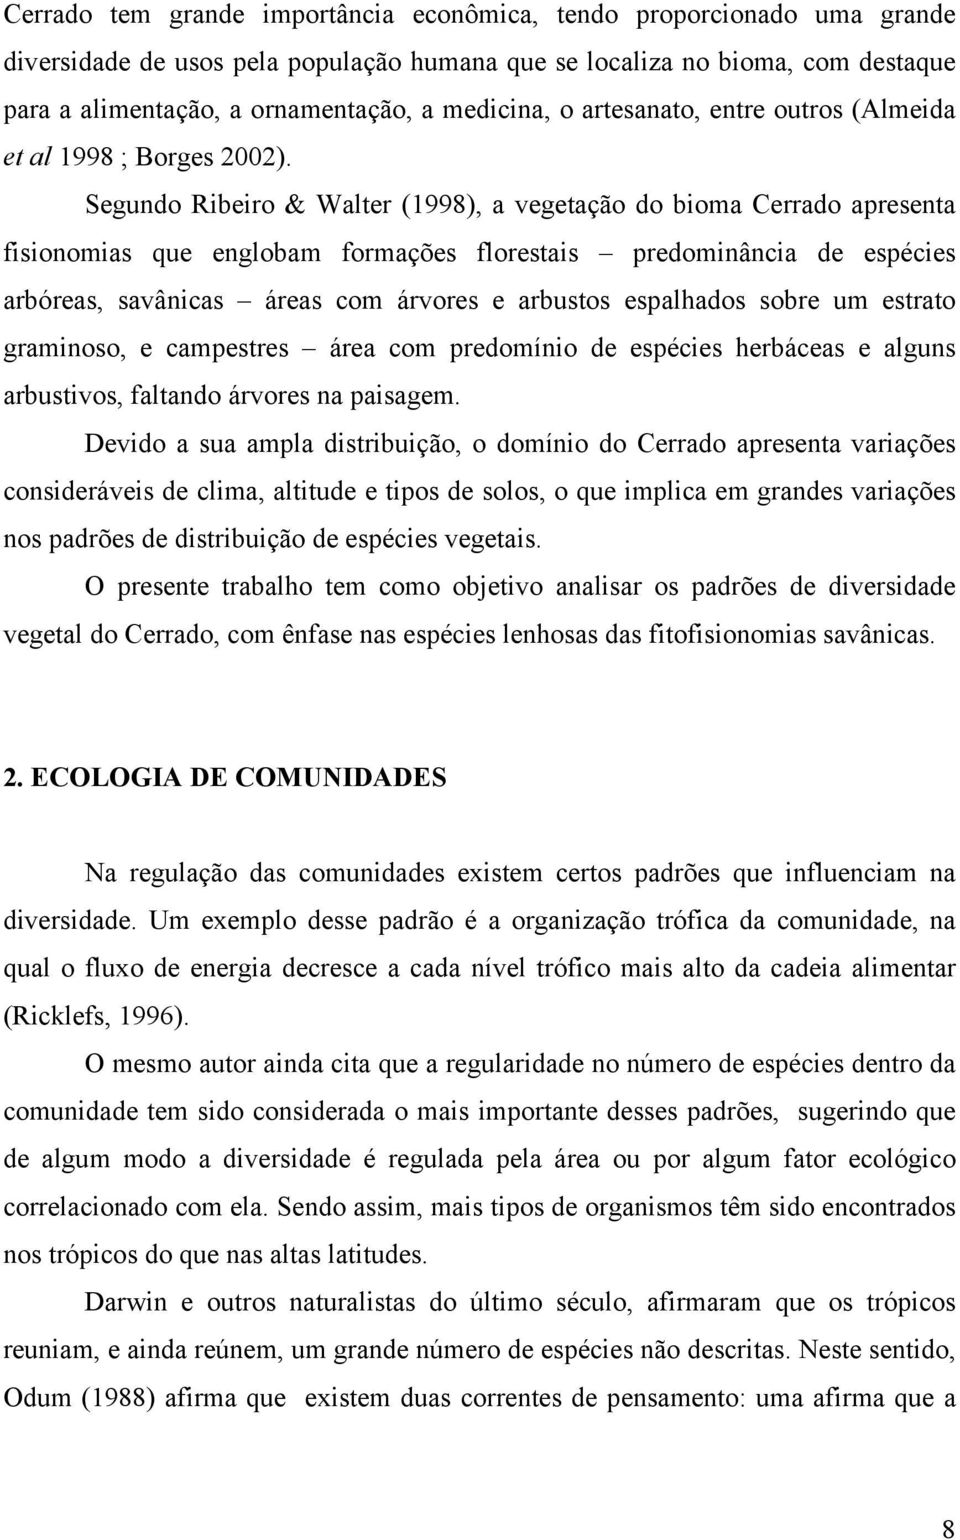 Segundo Ribeiro & Walter (1998), a vegetação do bioma Cerrado apresenta fisionomias que englobam formações florestais predominância de espécies arbóreas, savânicas áreas com árvores e arbustos